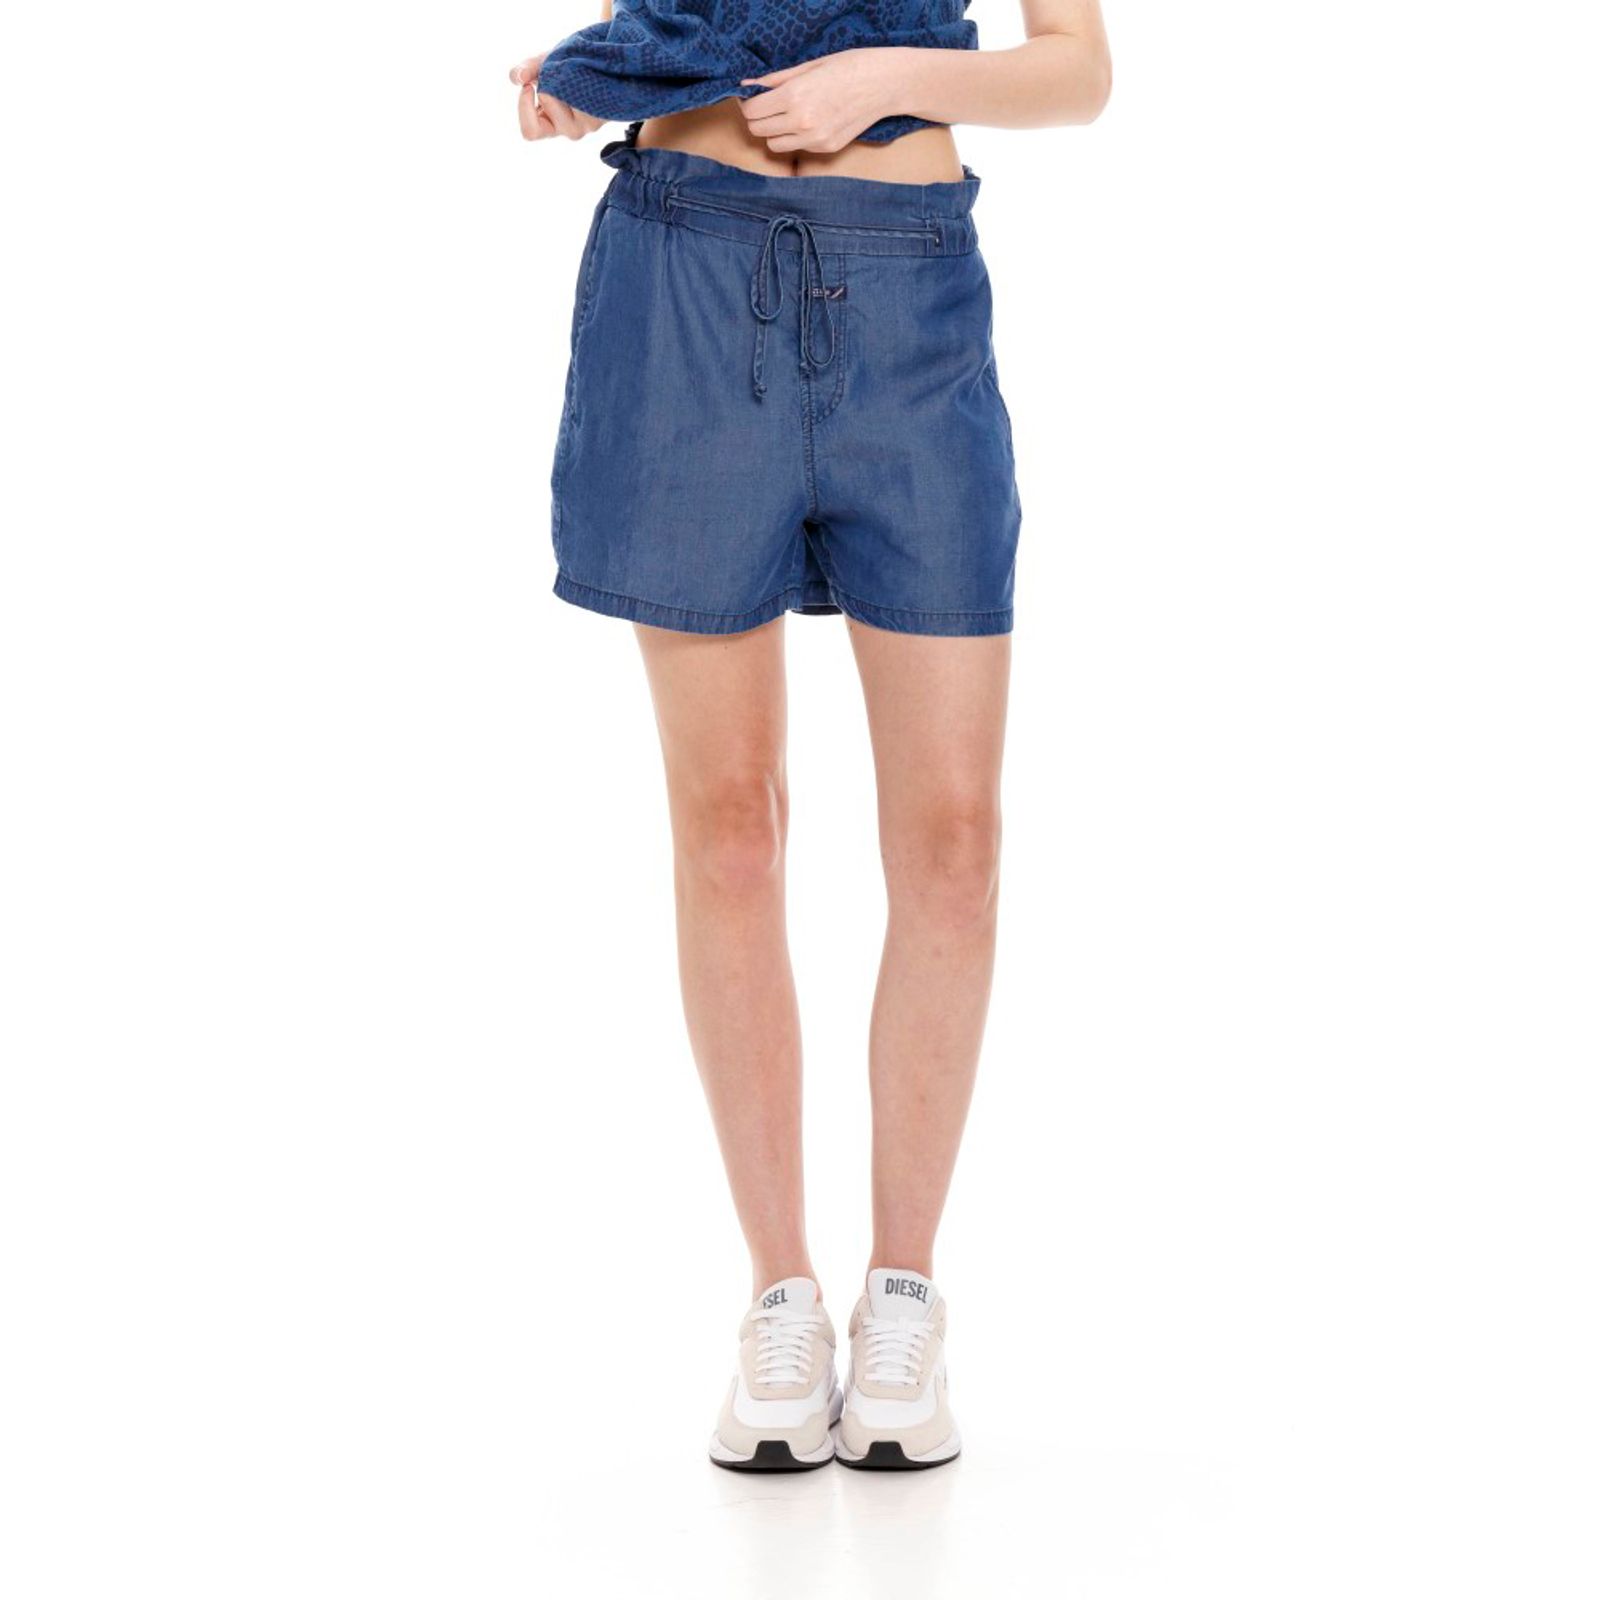 Shorts Mujer - Compra Online Shorts para Mujeres en .co